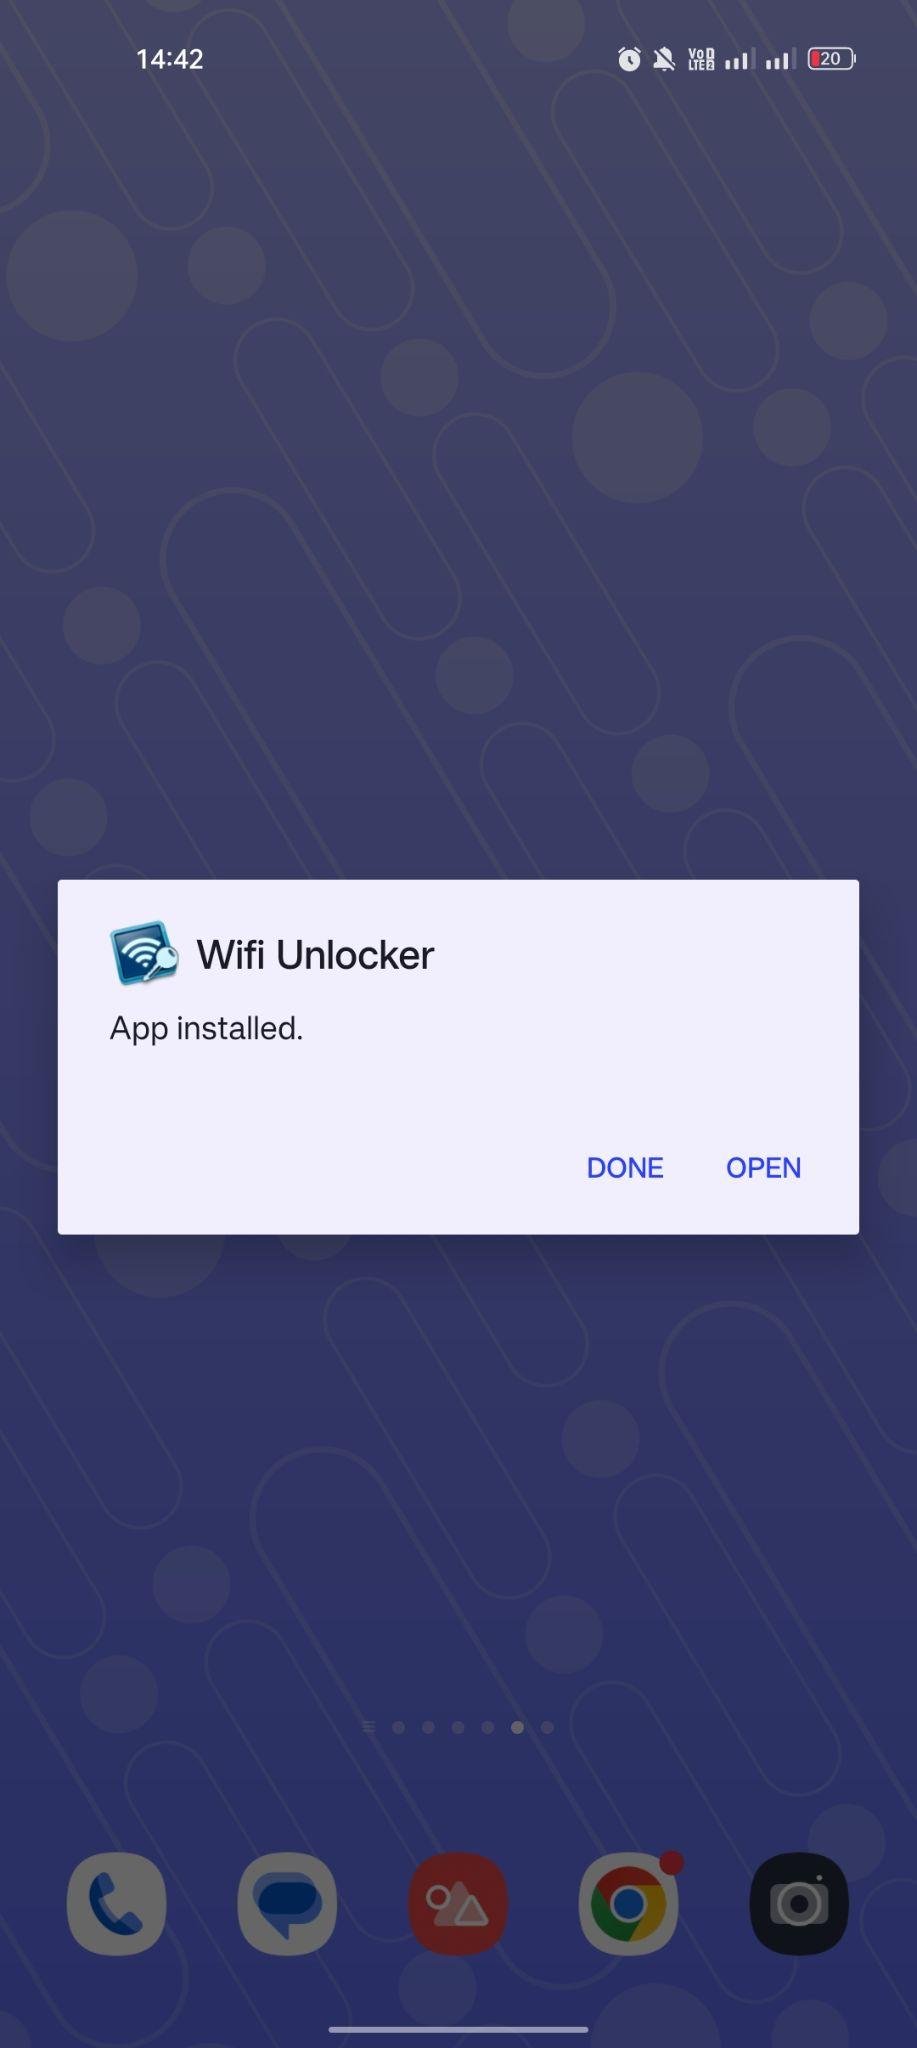 WiFi Unlocker apk installed